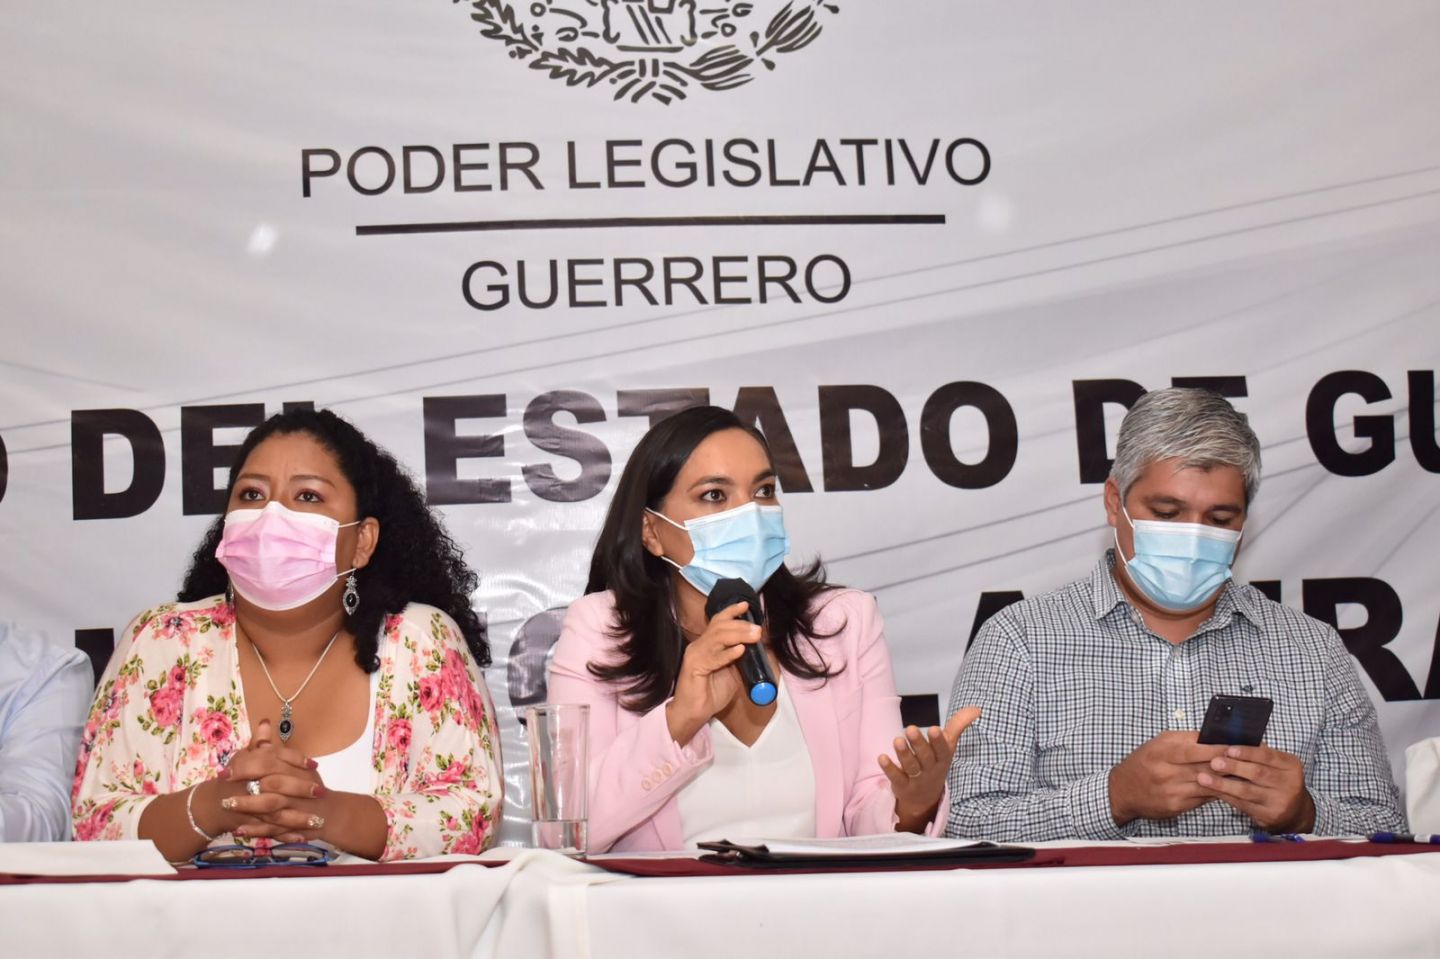 La pobreza en Guerrero se contuvo gracias a los programas federales: Beatriz Mojica 